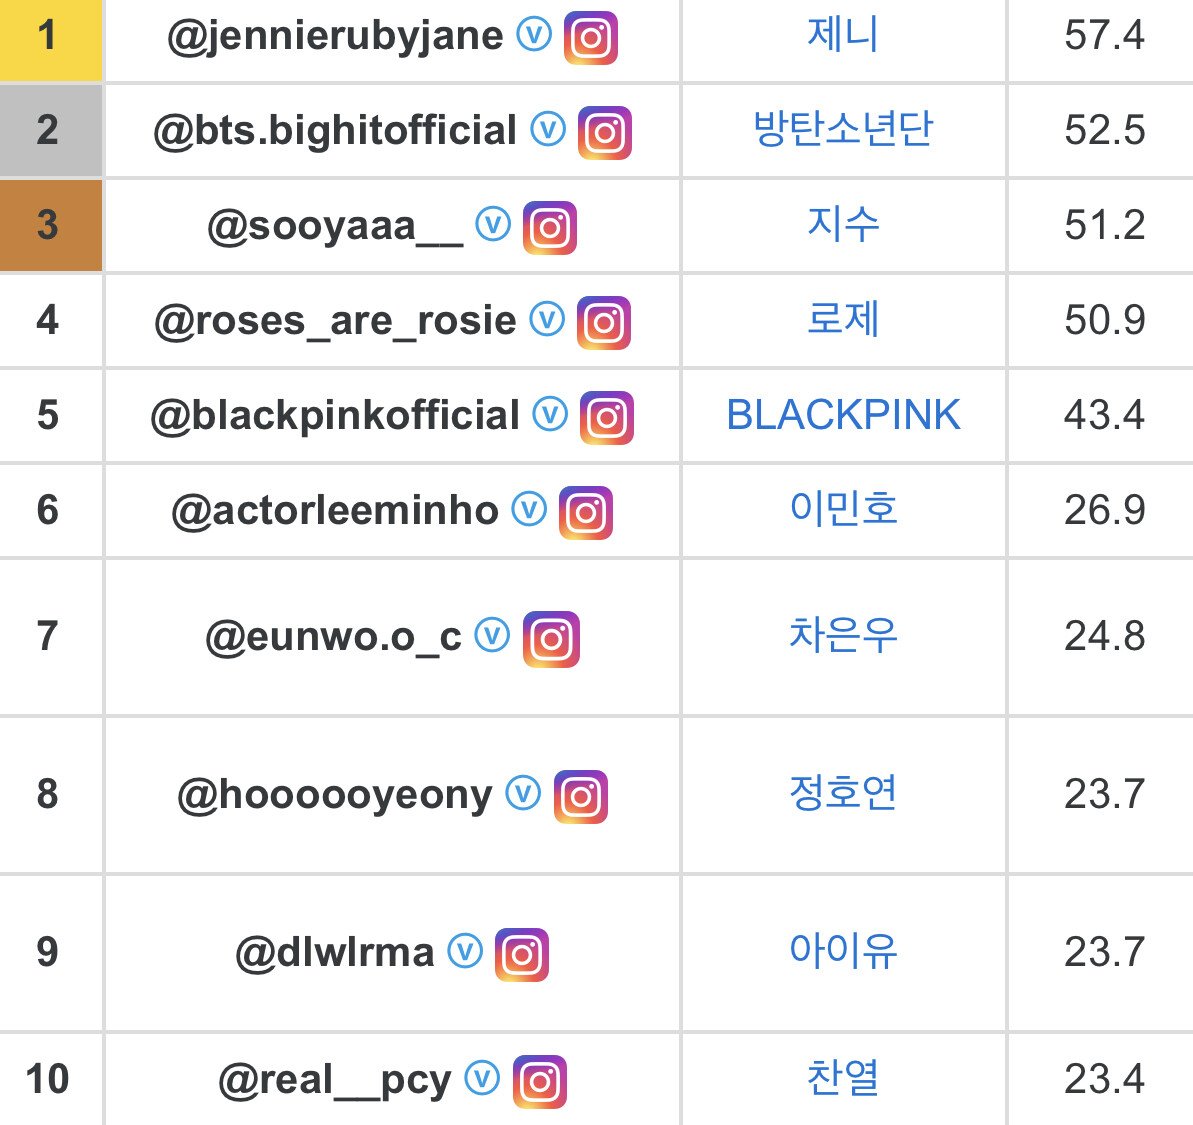 Rankings of Instagram followers in Korea.